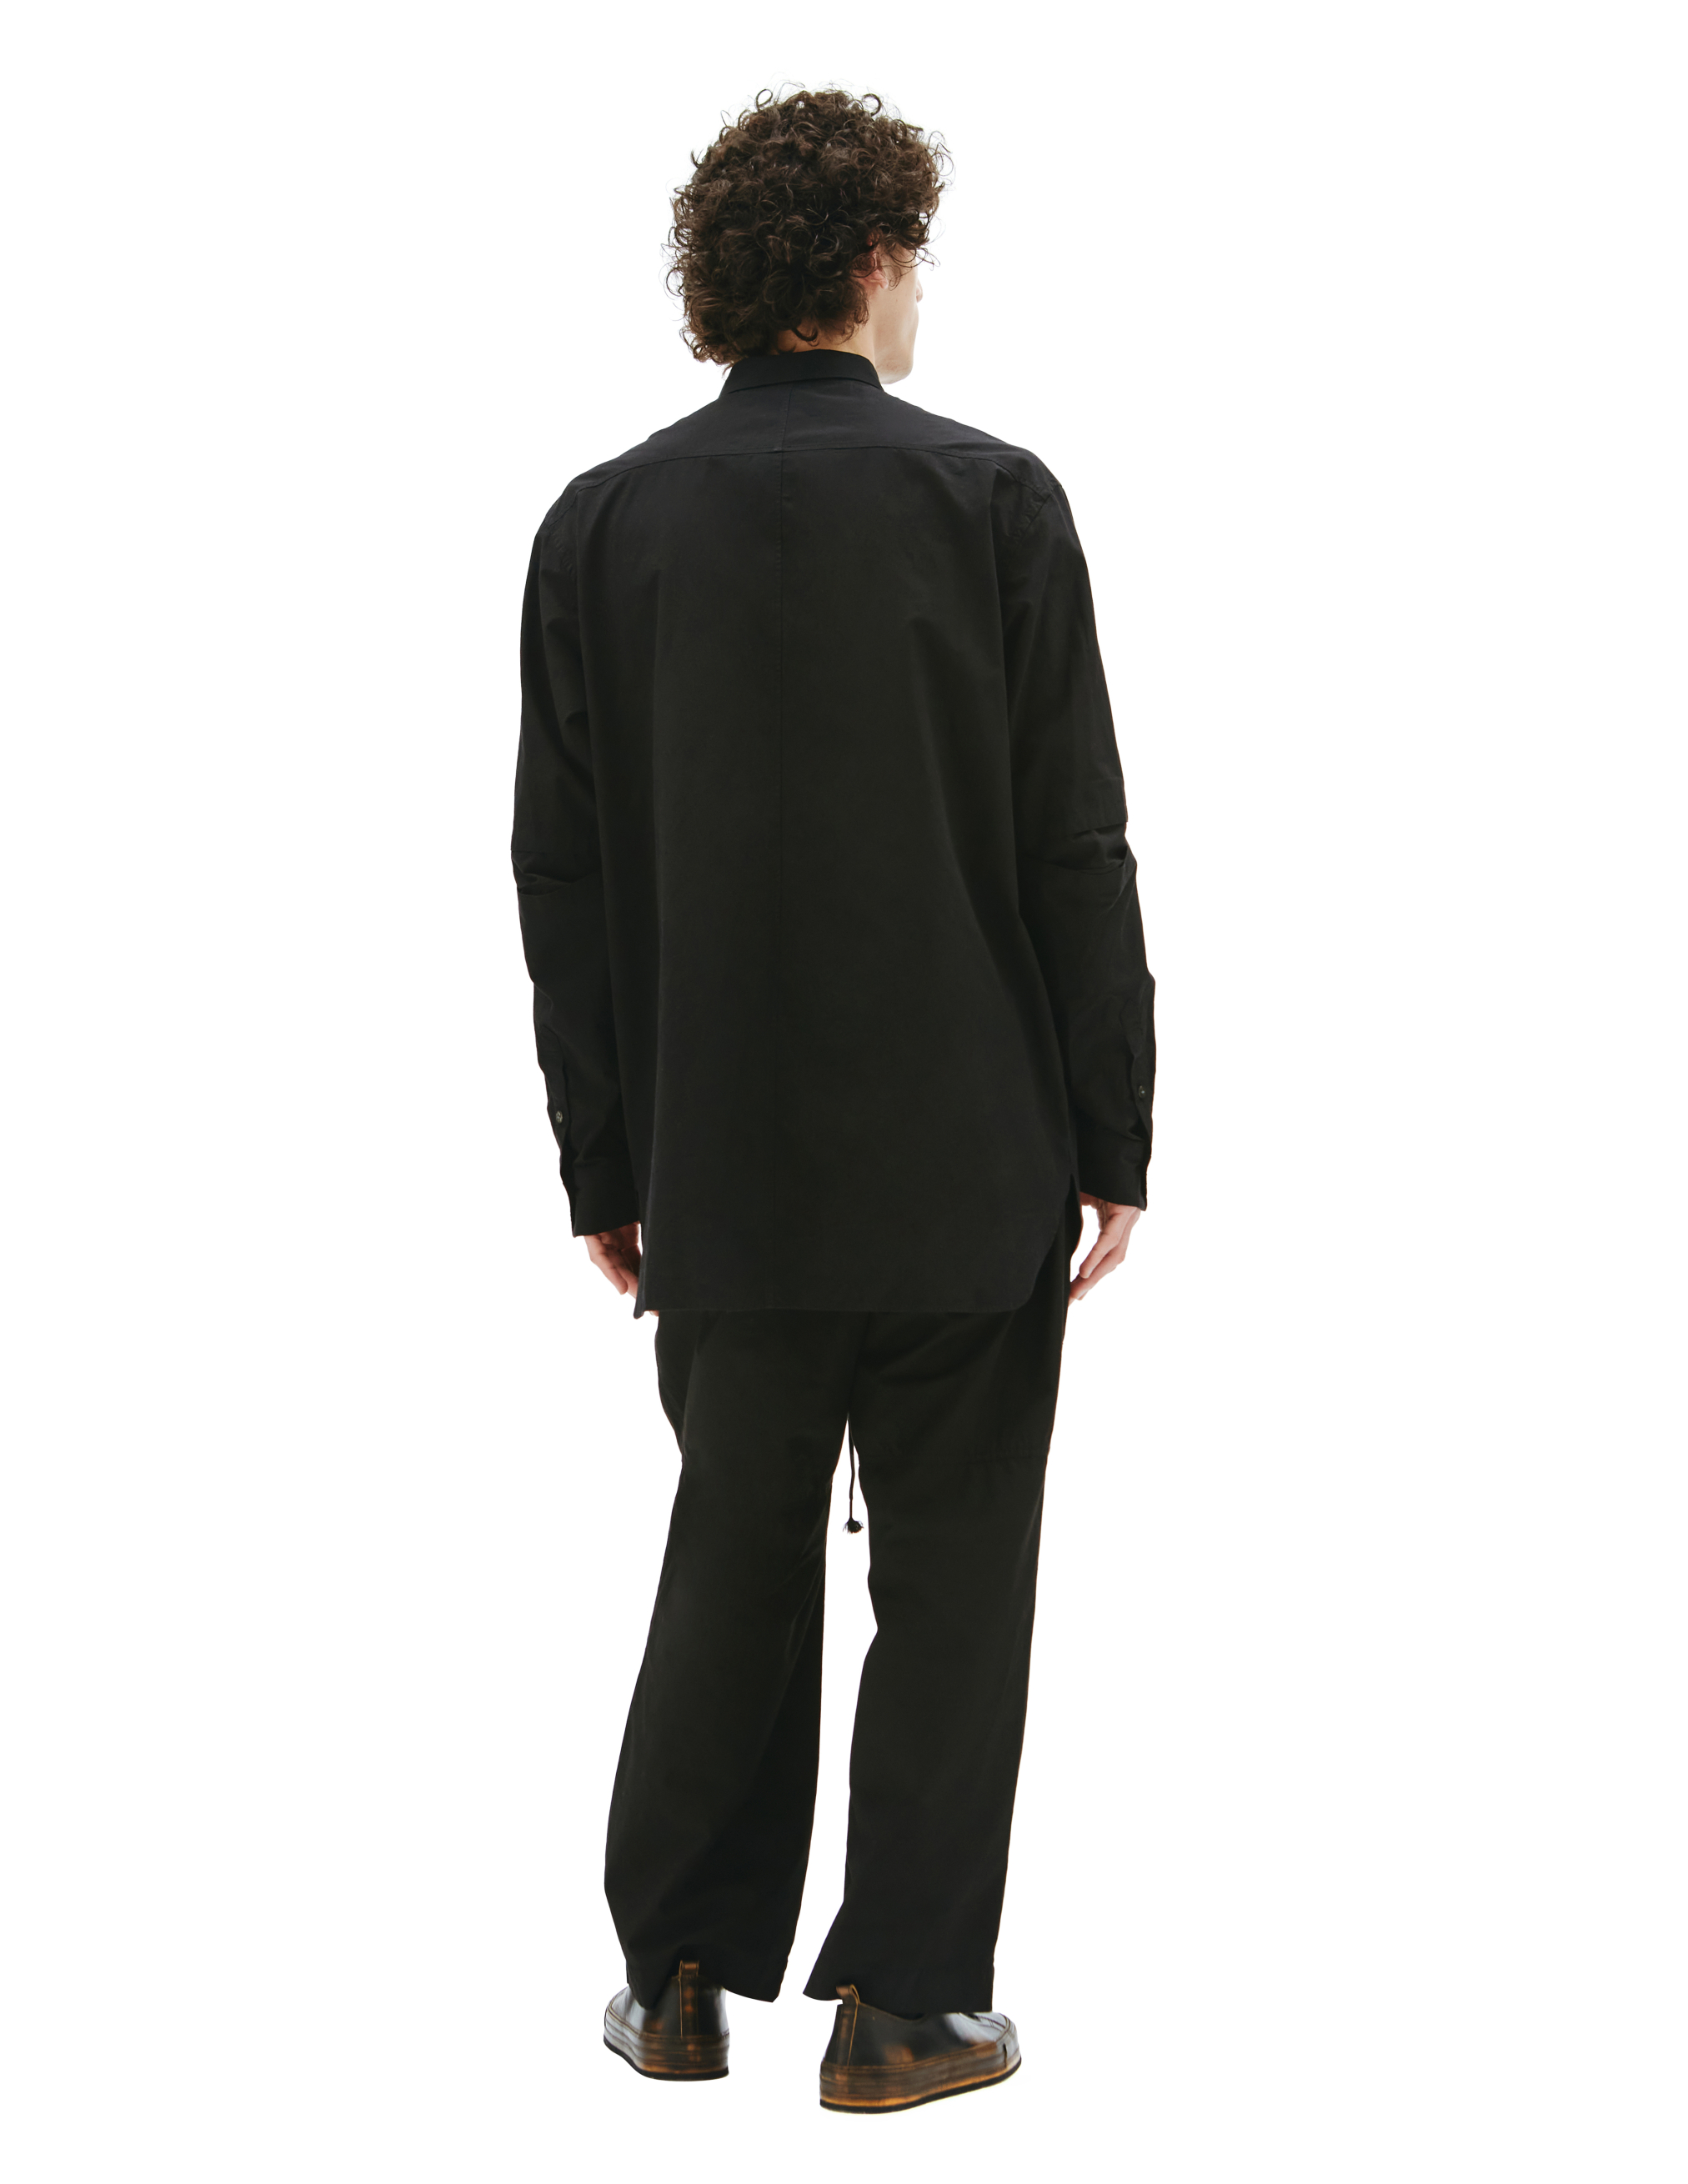 Черная рубашка со скрытым карманом The Viridi-Anne VI/3492/02, размер 4 VI/3492/02 - фото 4